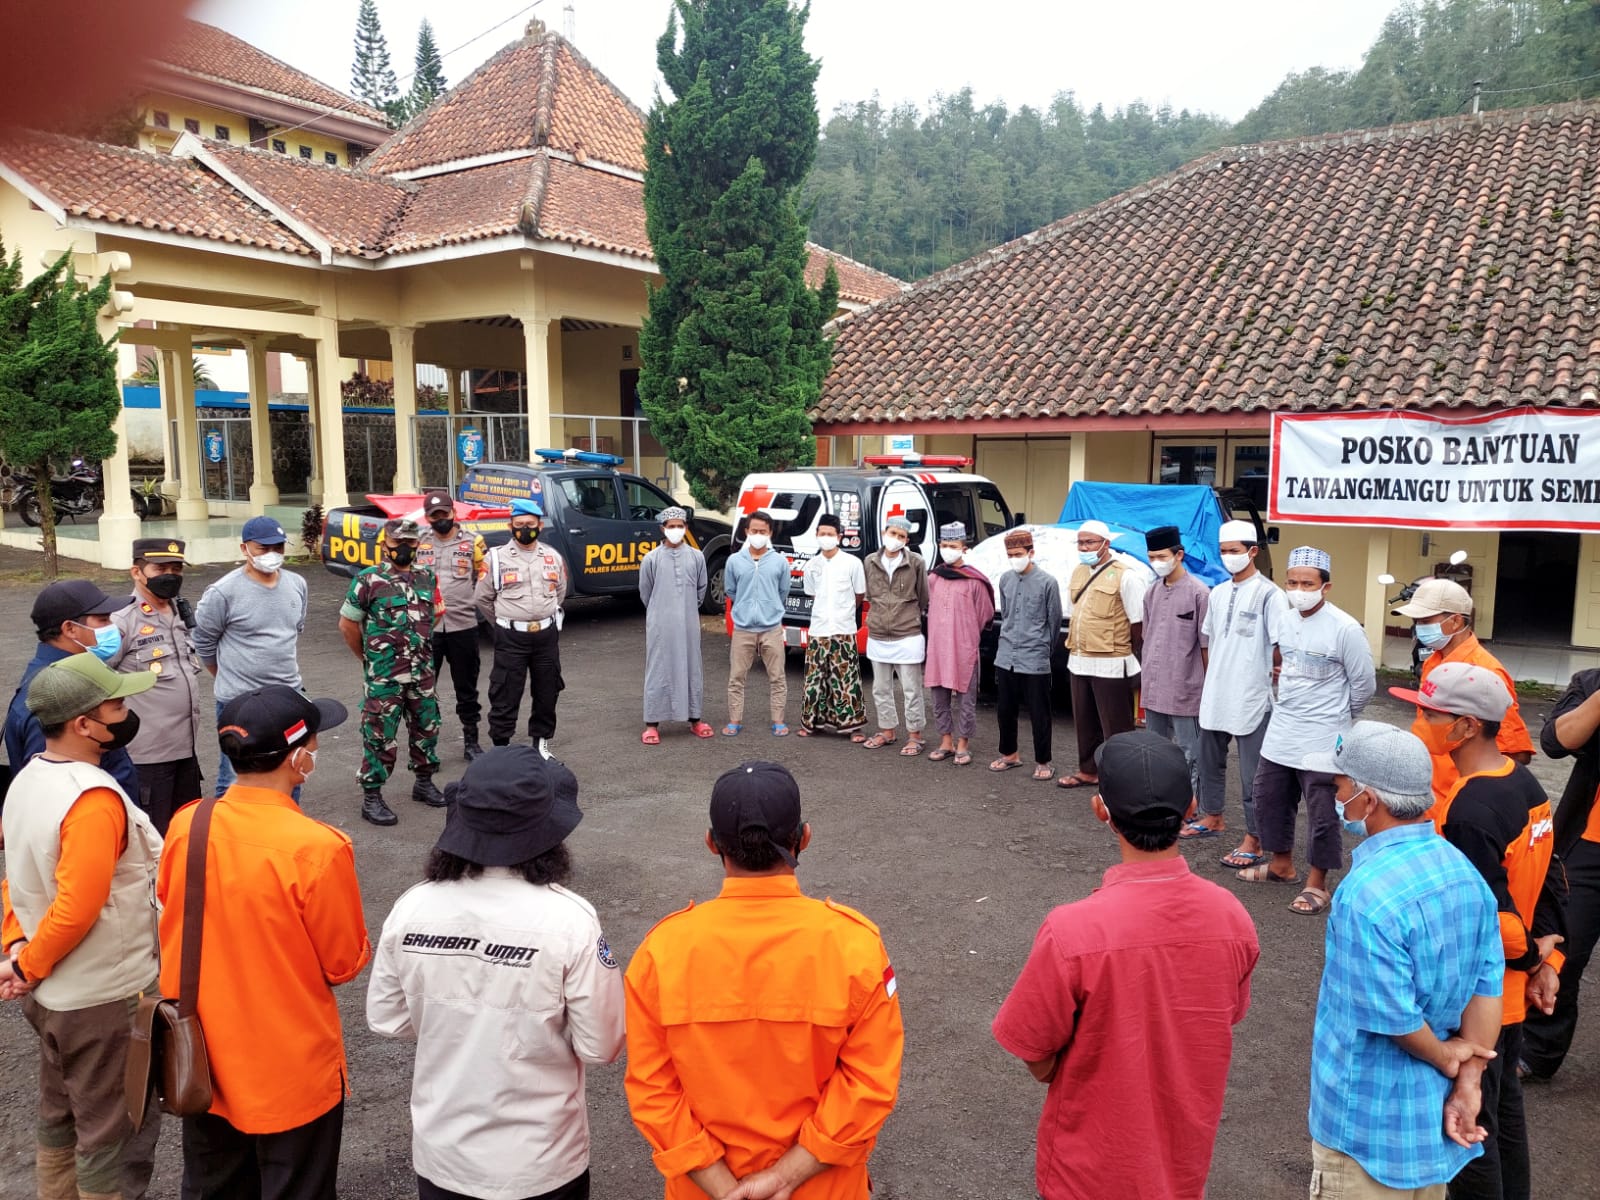 Posko Relawan Tawangmangu untuk Semeru Resmi Ditutup